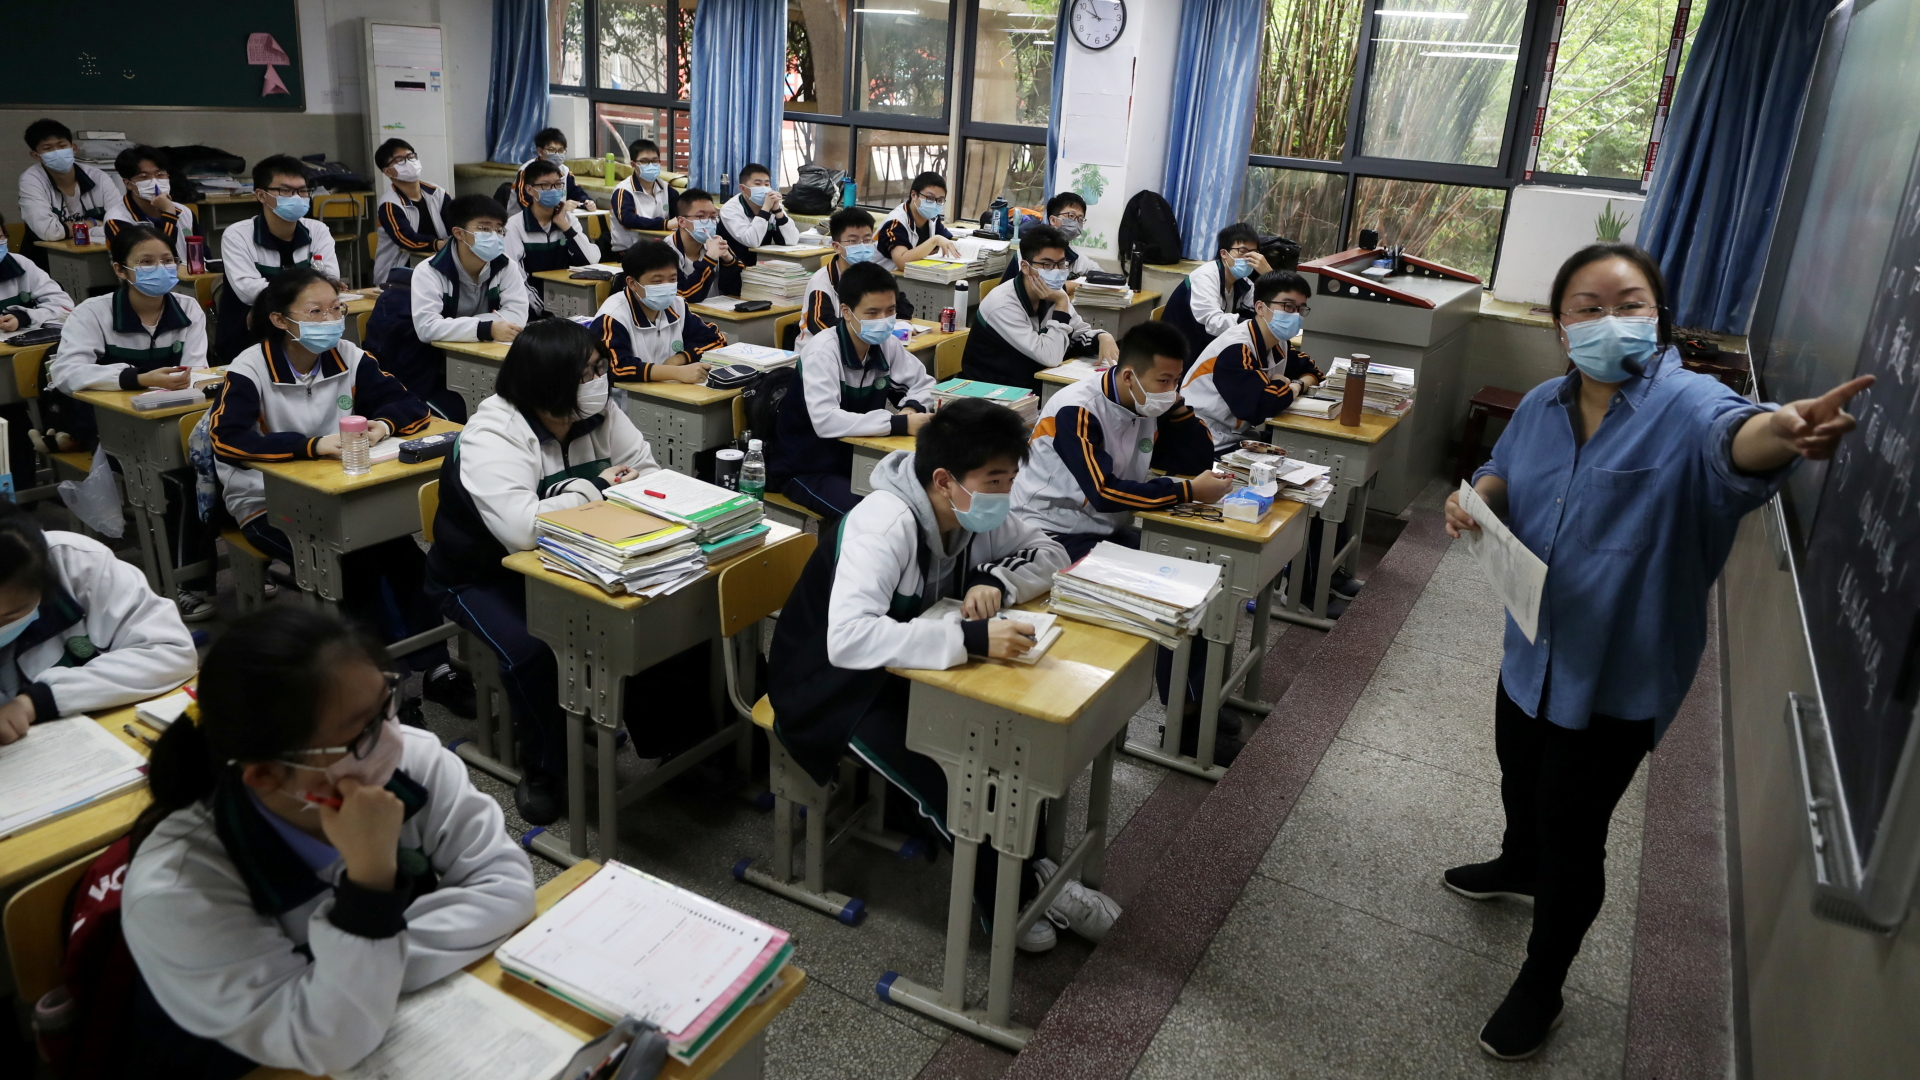 Eine Lehrerin steht vor einer Klasse in einer Oberschule in der chinesischen Metropole Wuhan. Alle tragen Mundschutzmasken. | REUTERS